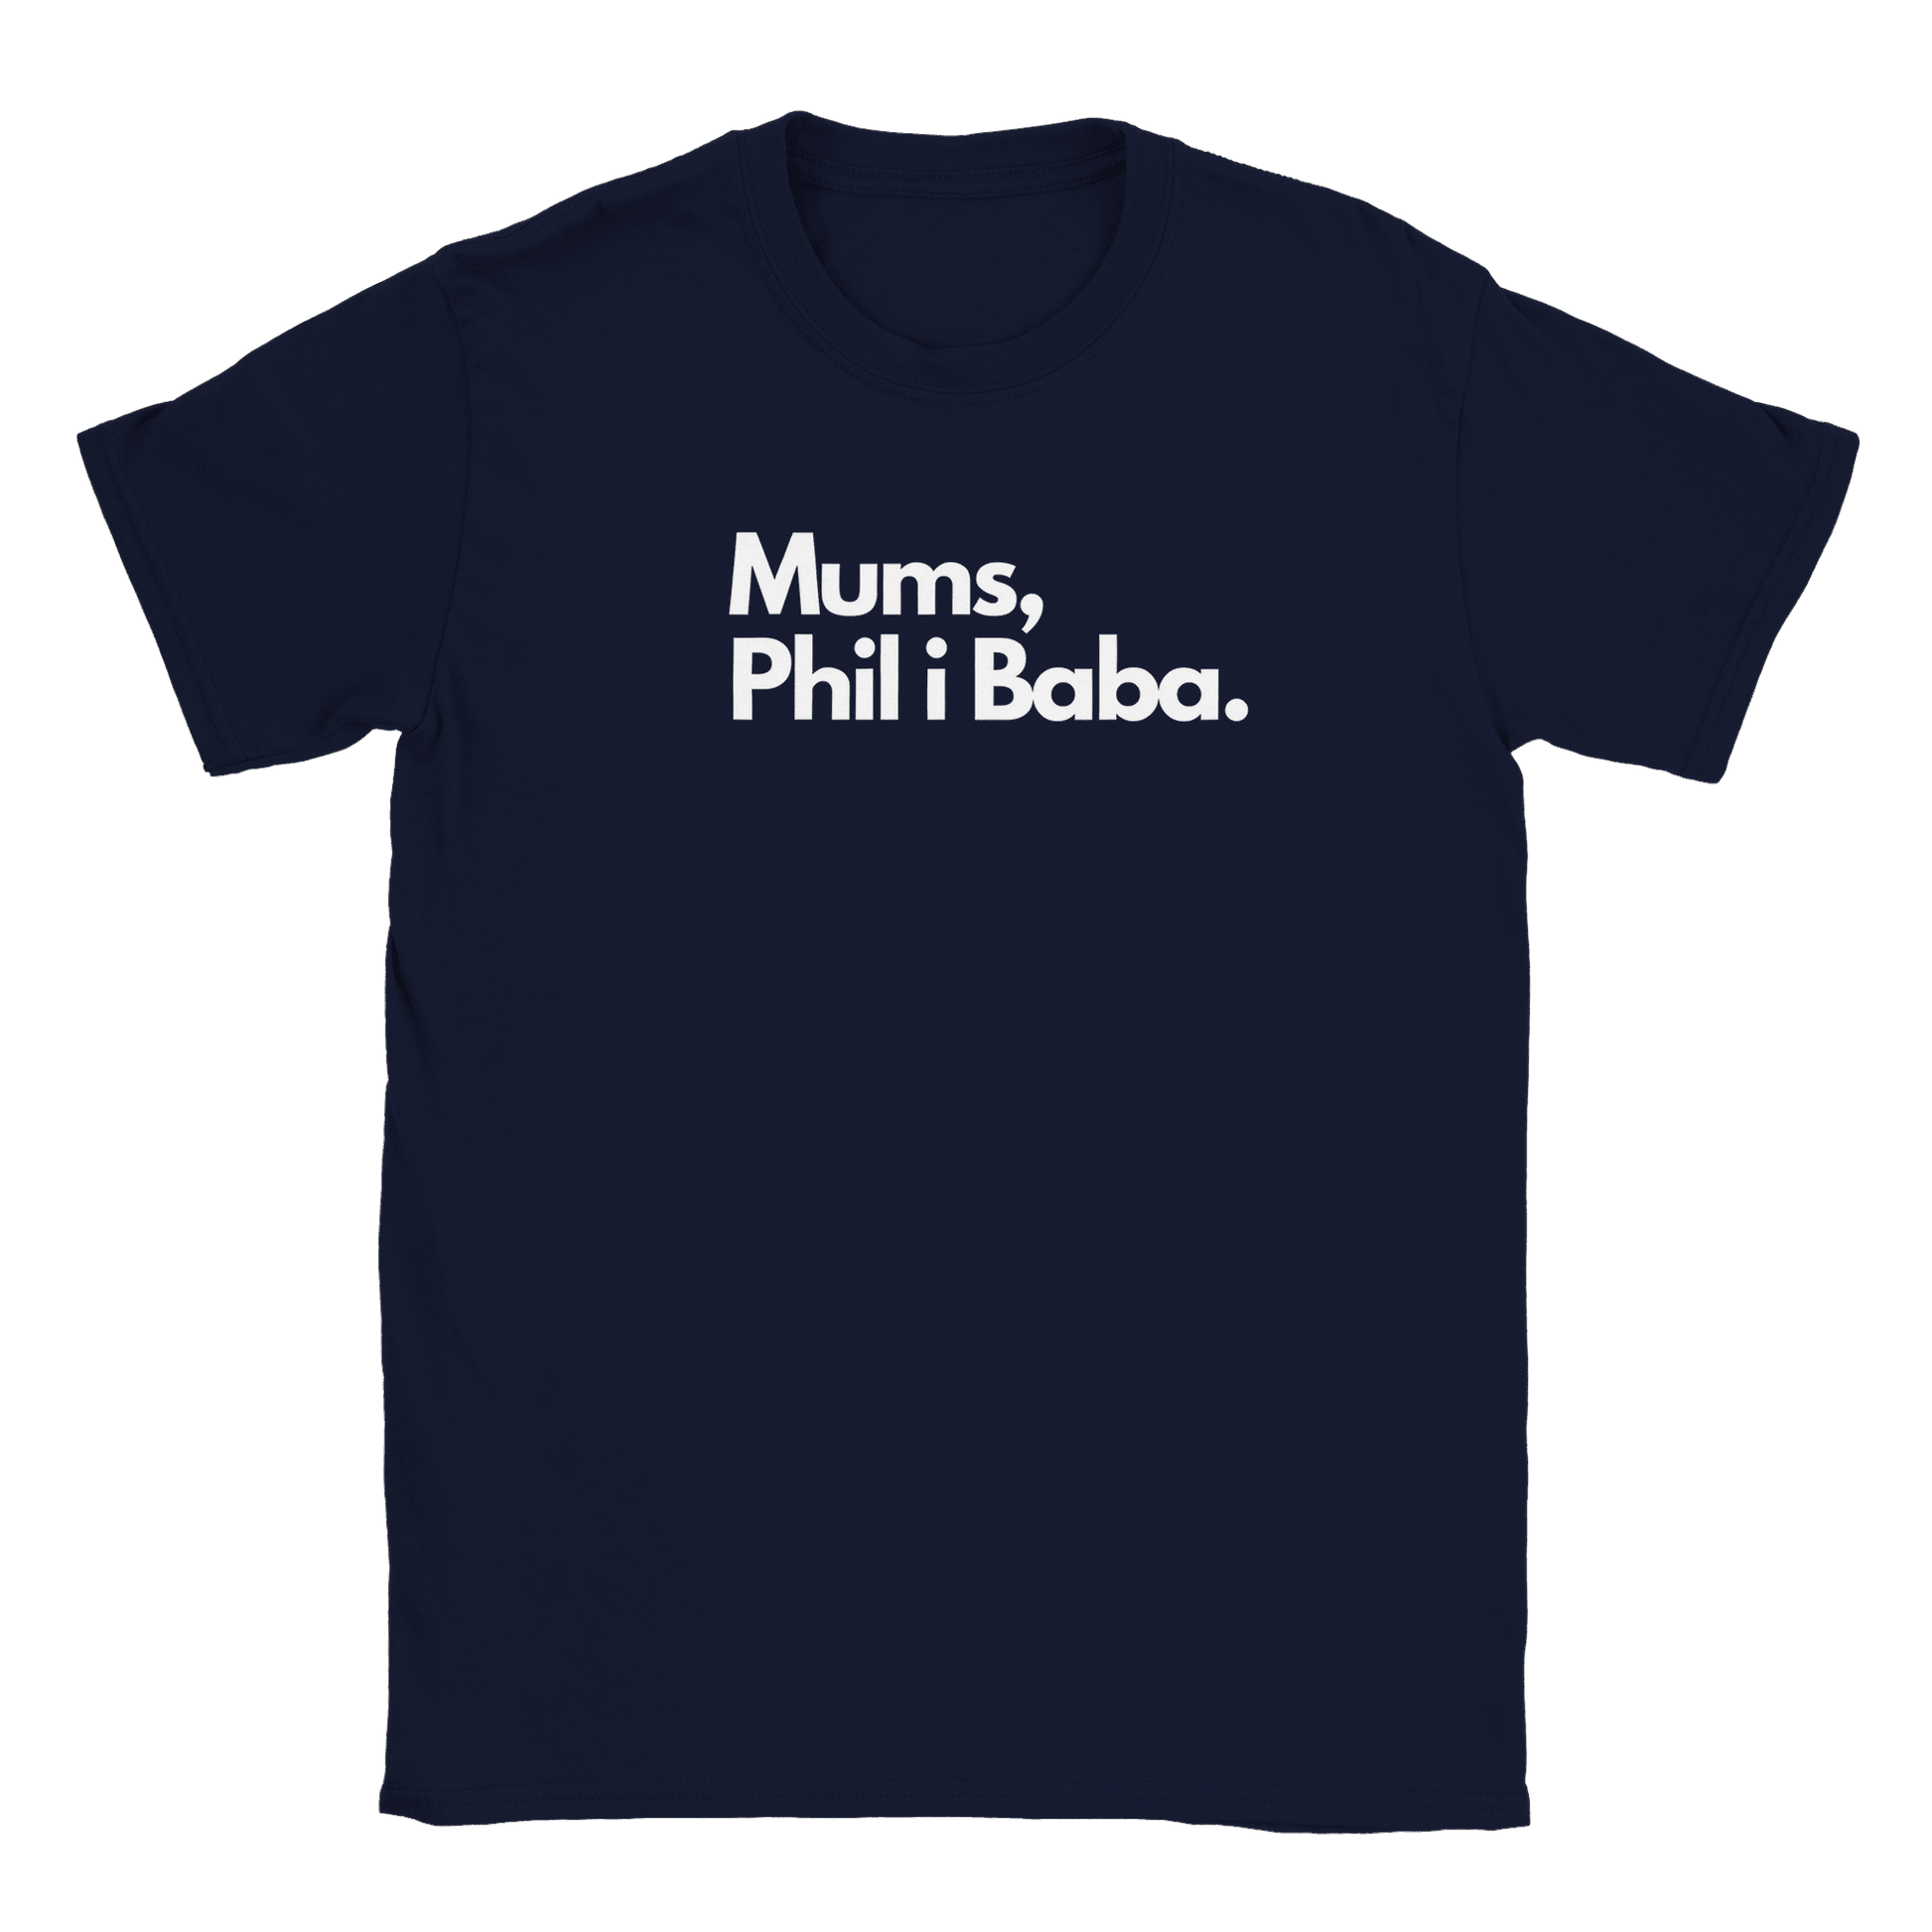 Mumsfilibabba - T-shirt Navy